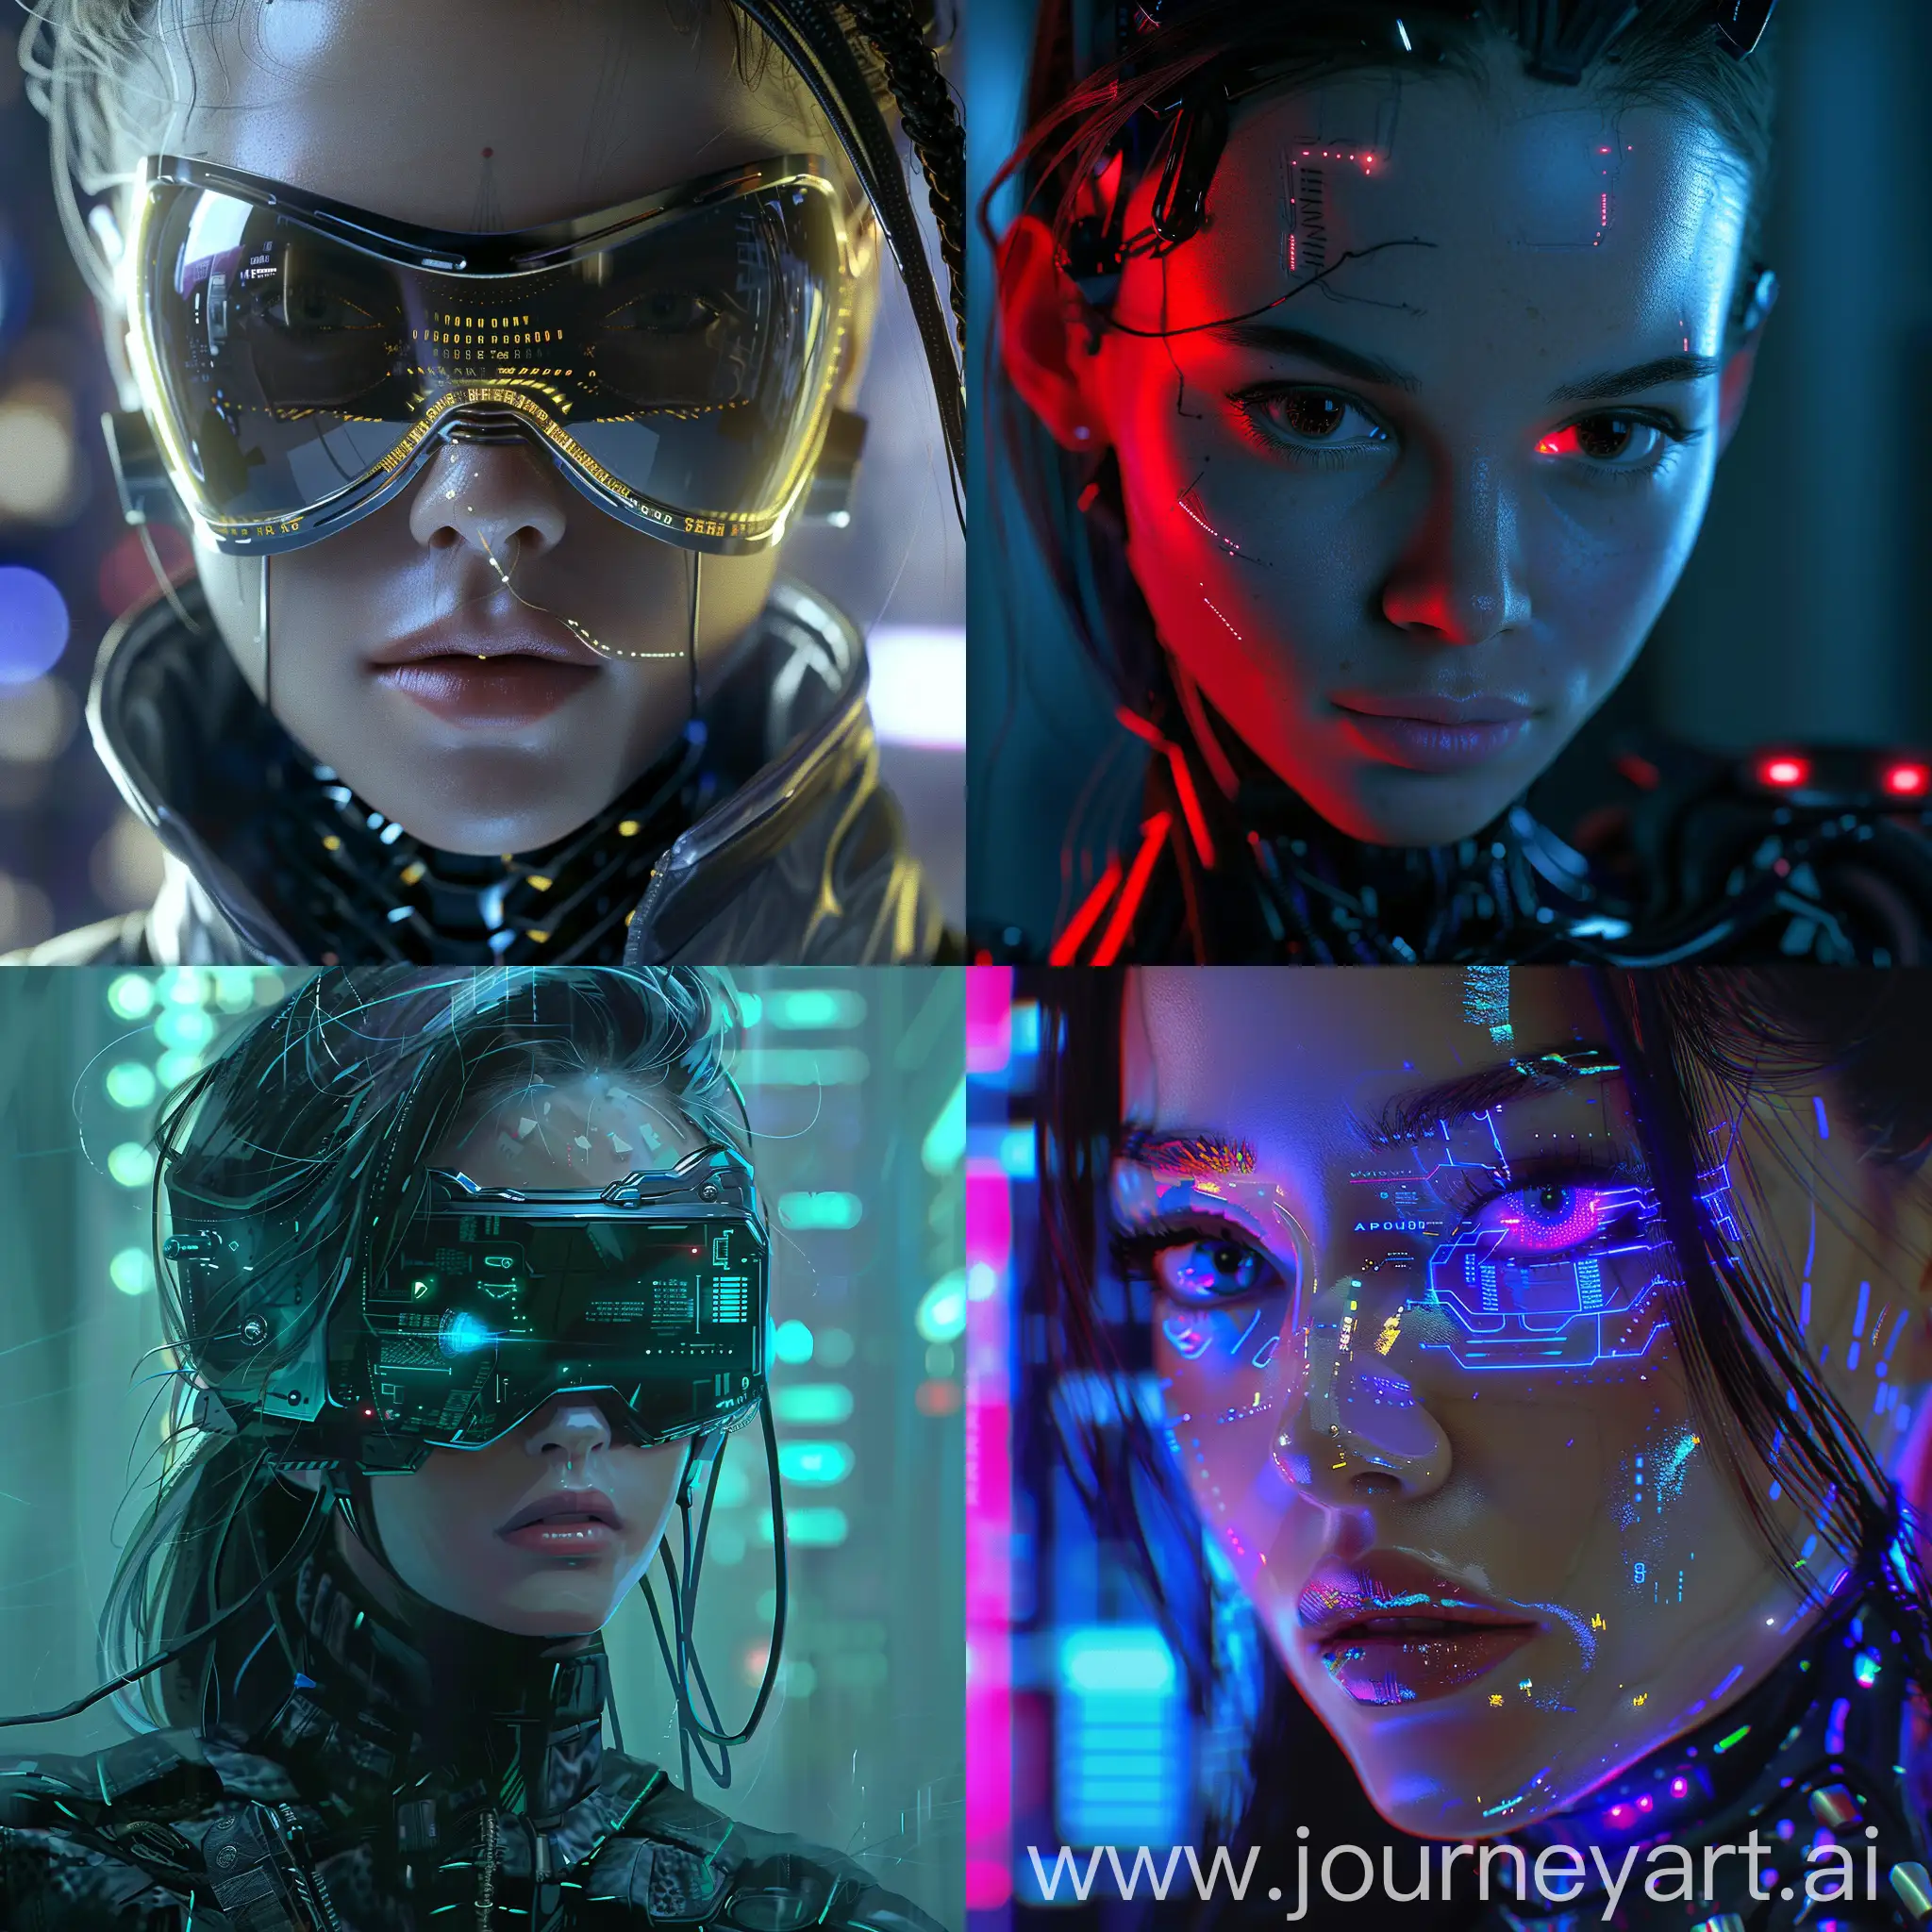 Futuristic-Cyberwoman-Portrait-with-Neon-Glow